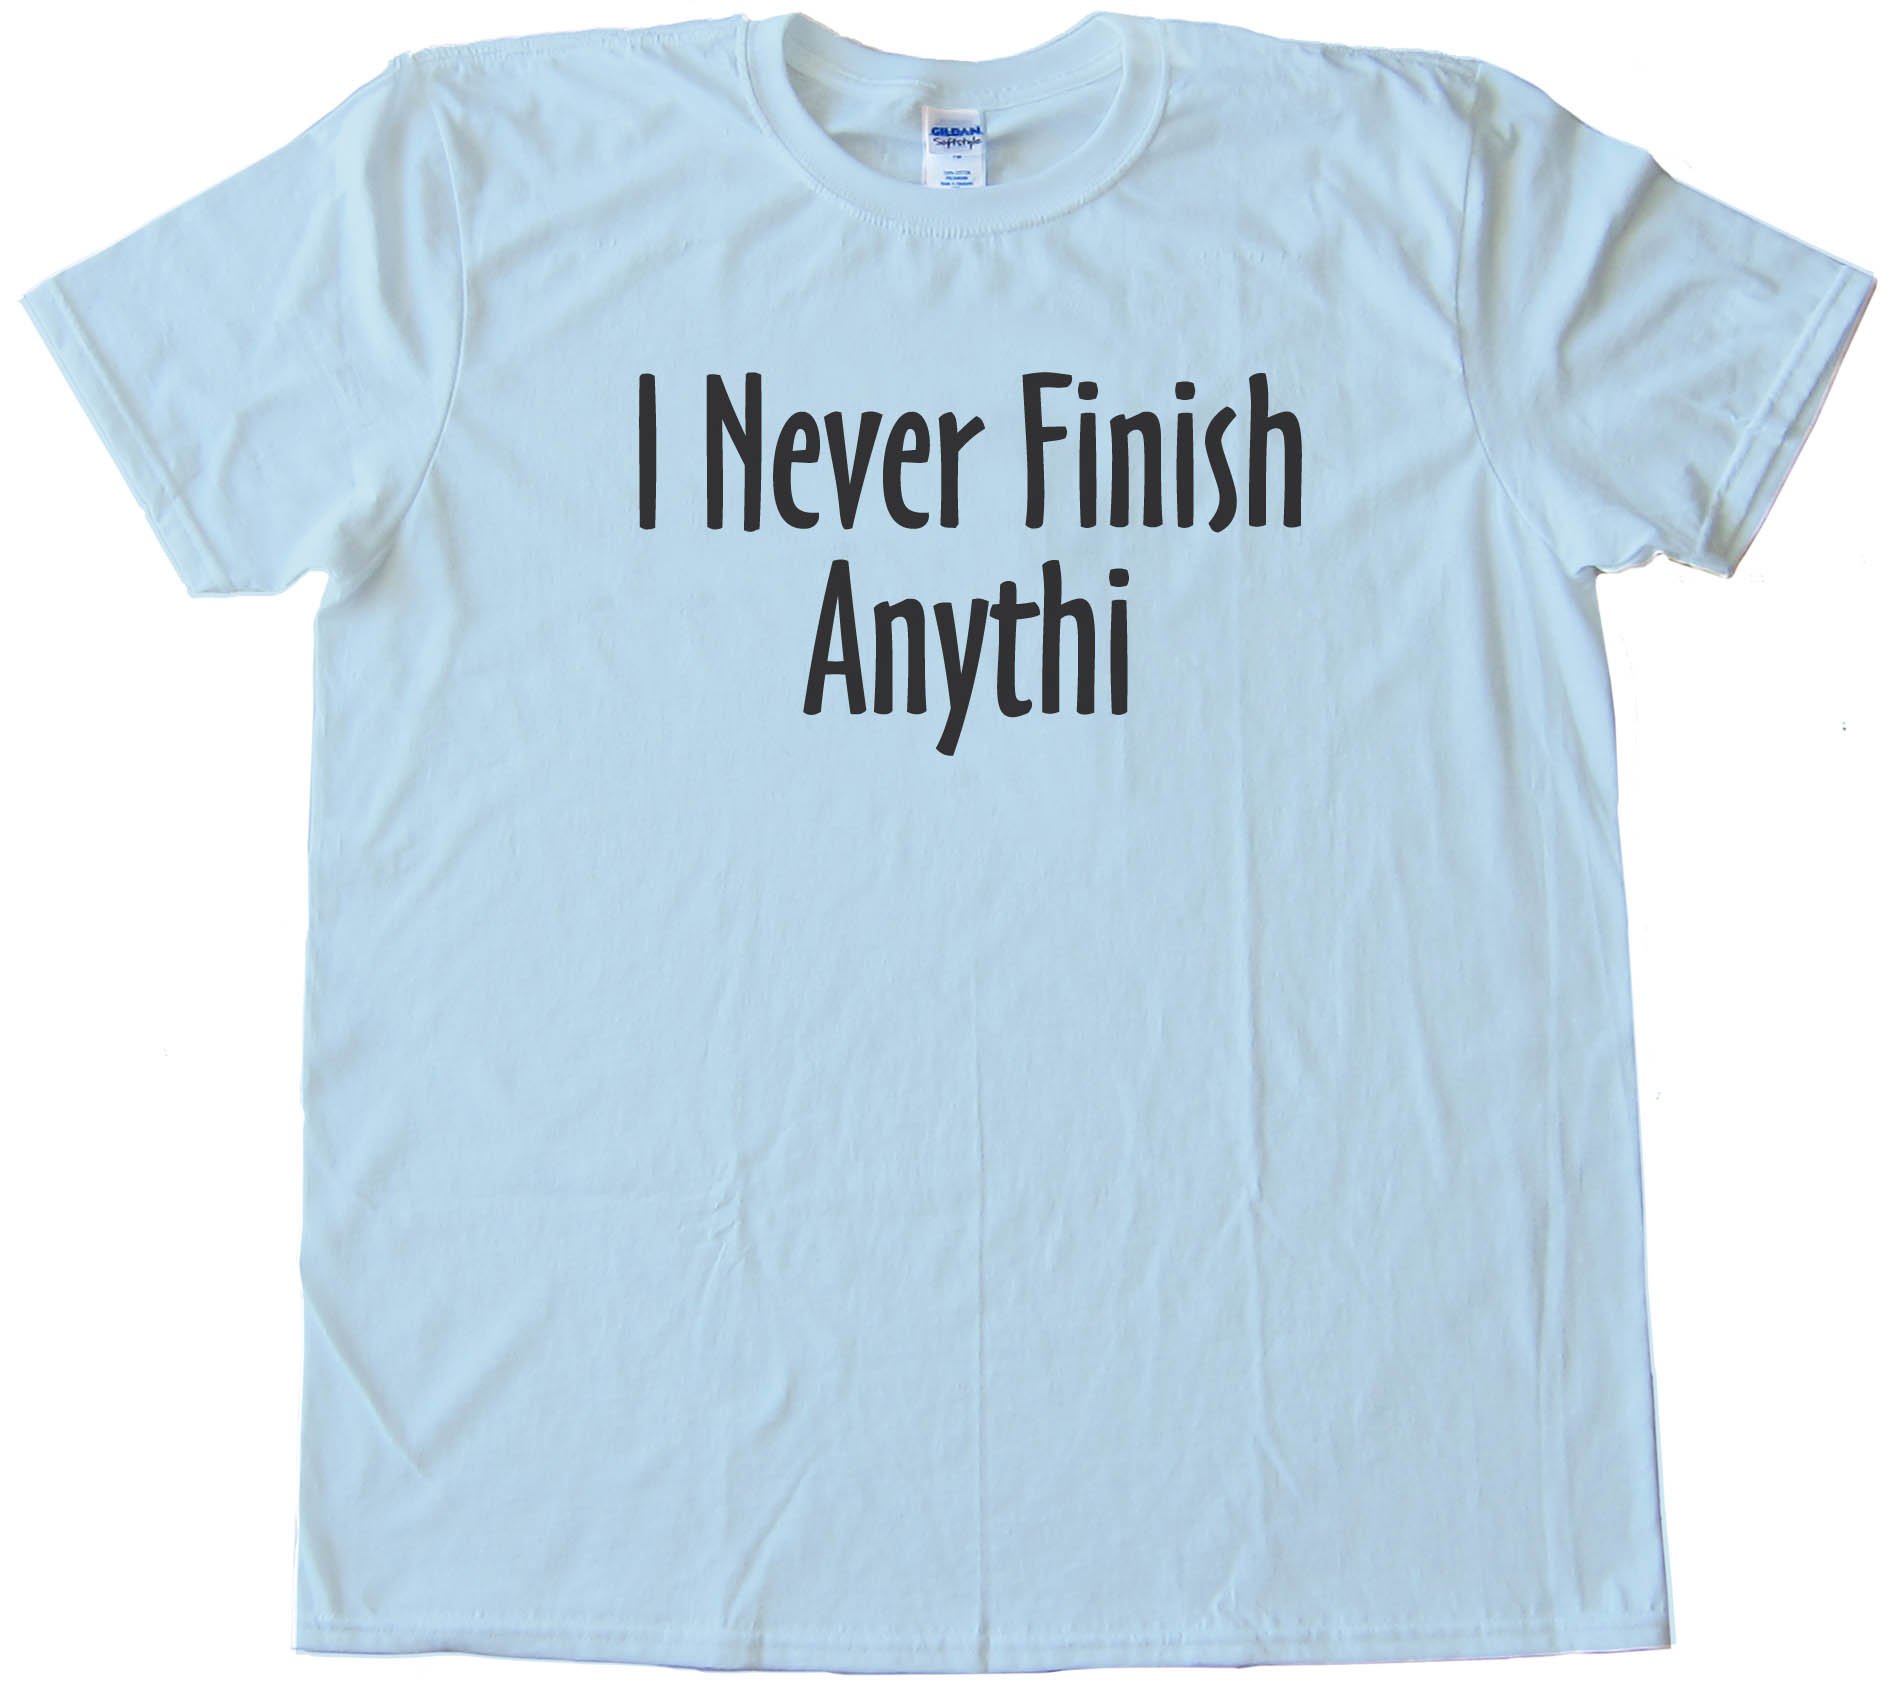 I Never Finish Anything - Tee Shirt